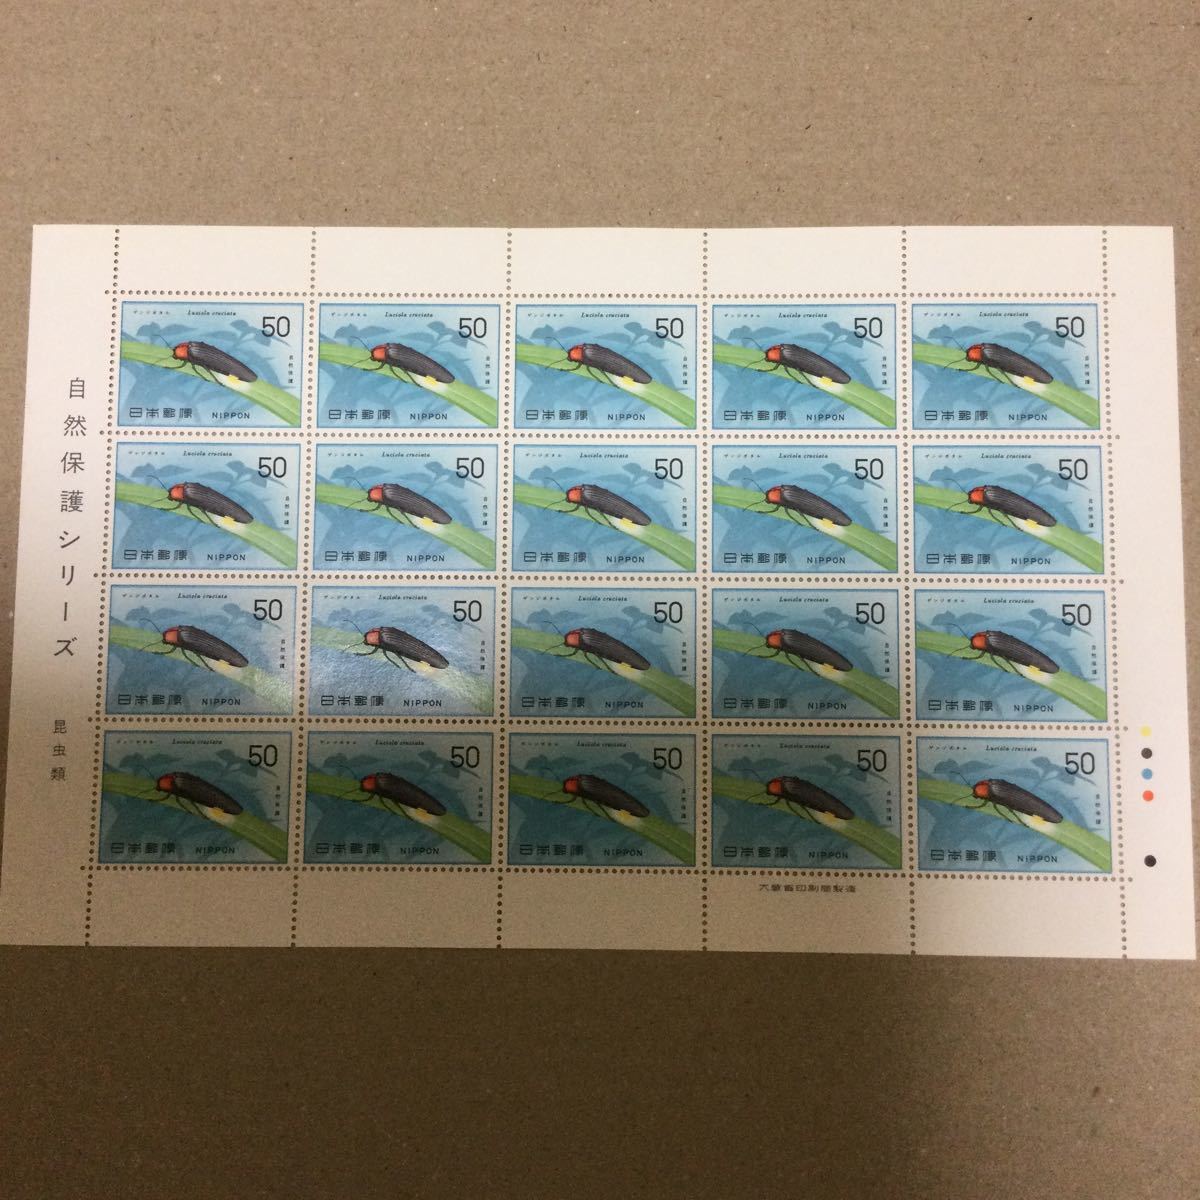 【未使用】1977年 自然保護シリーズ 昆虫類 ゲンジボタル50円×20枚 切手 大蔵省印刷局製造 余白 記念切手の画像1